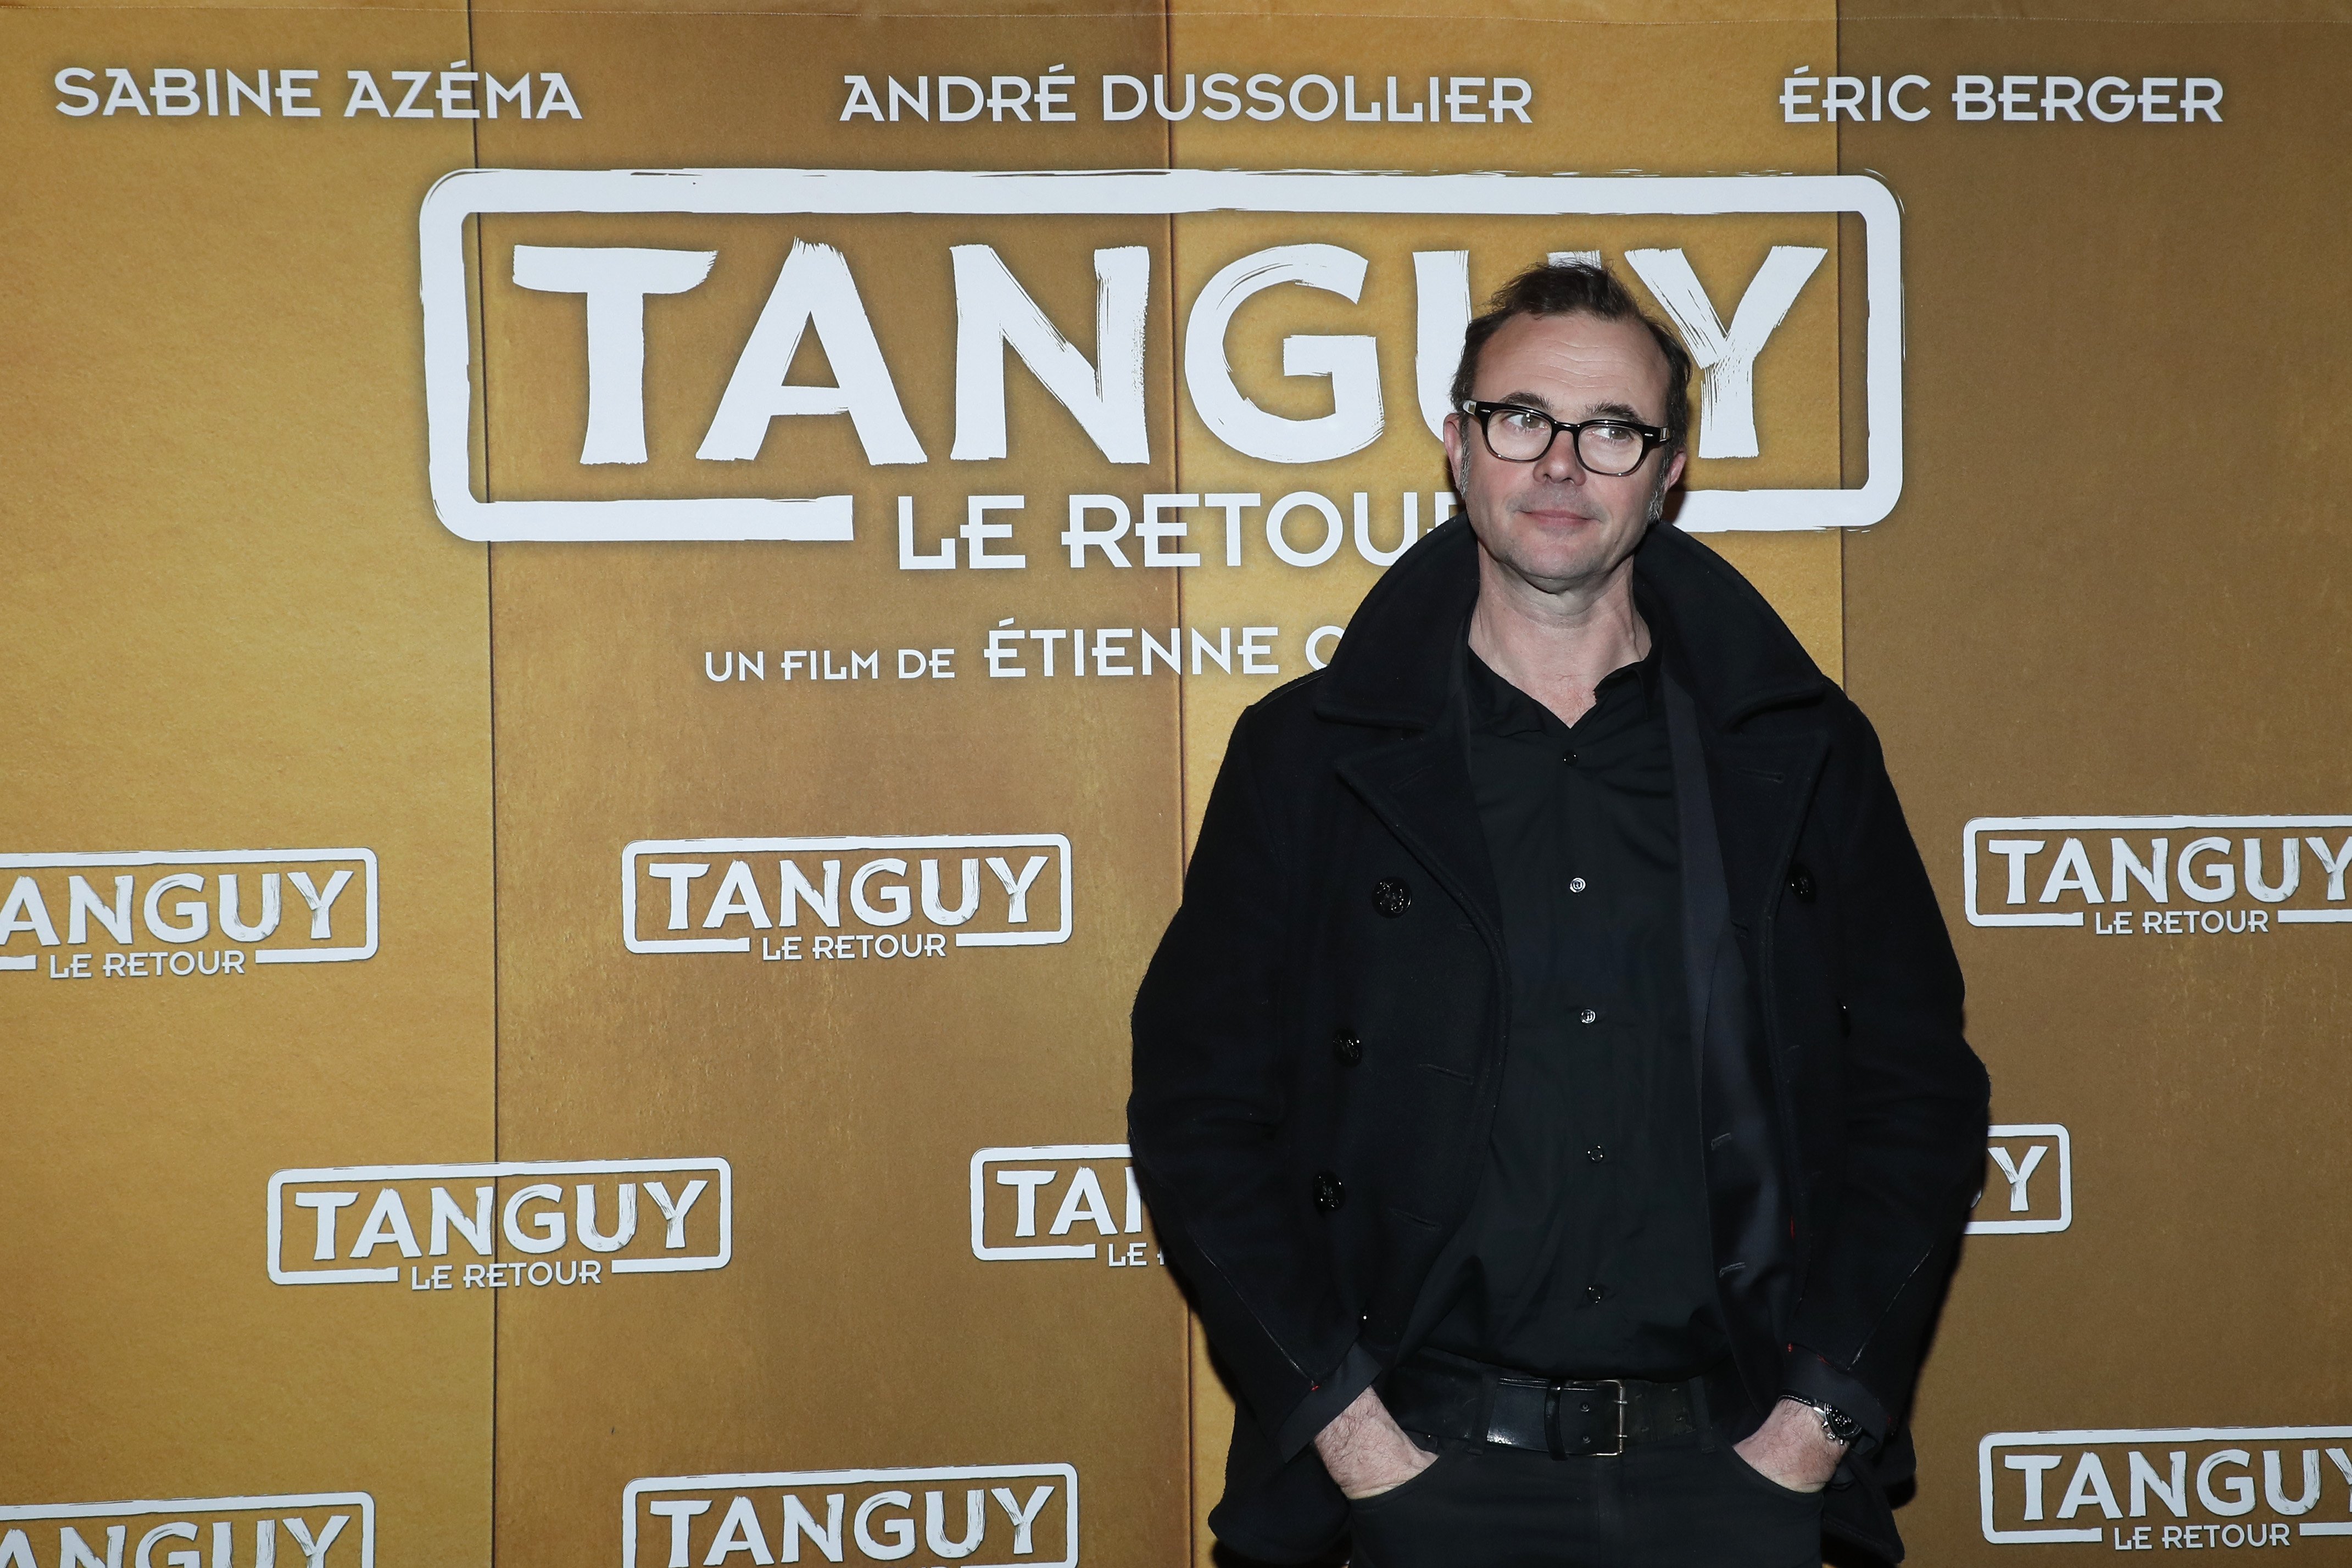 L'acteur du film Eric Berger assiste à l'avant-première parisienne de "Tanguy le Retour" au Cinéma Gaumont Capucines le 09 avril 2019 à Paris, France. | Photo : Getty Images